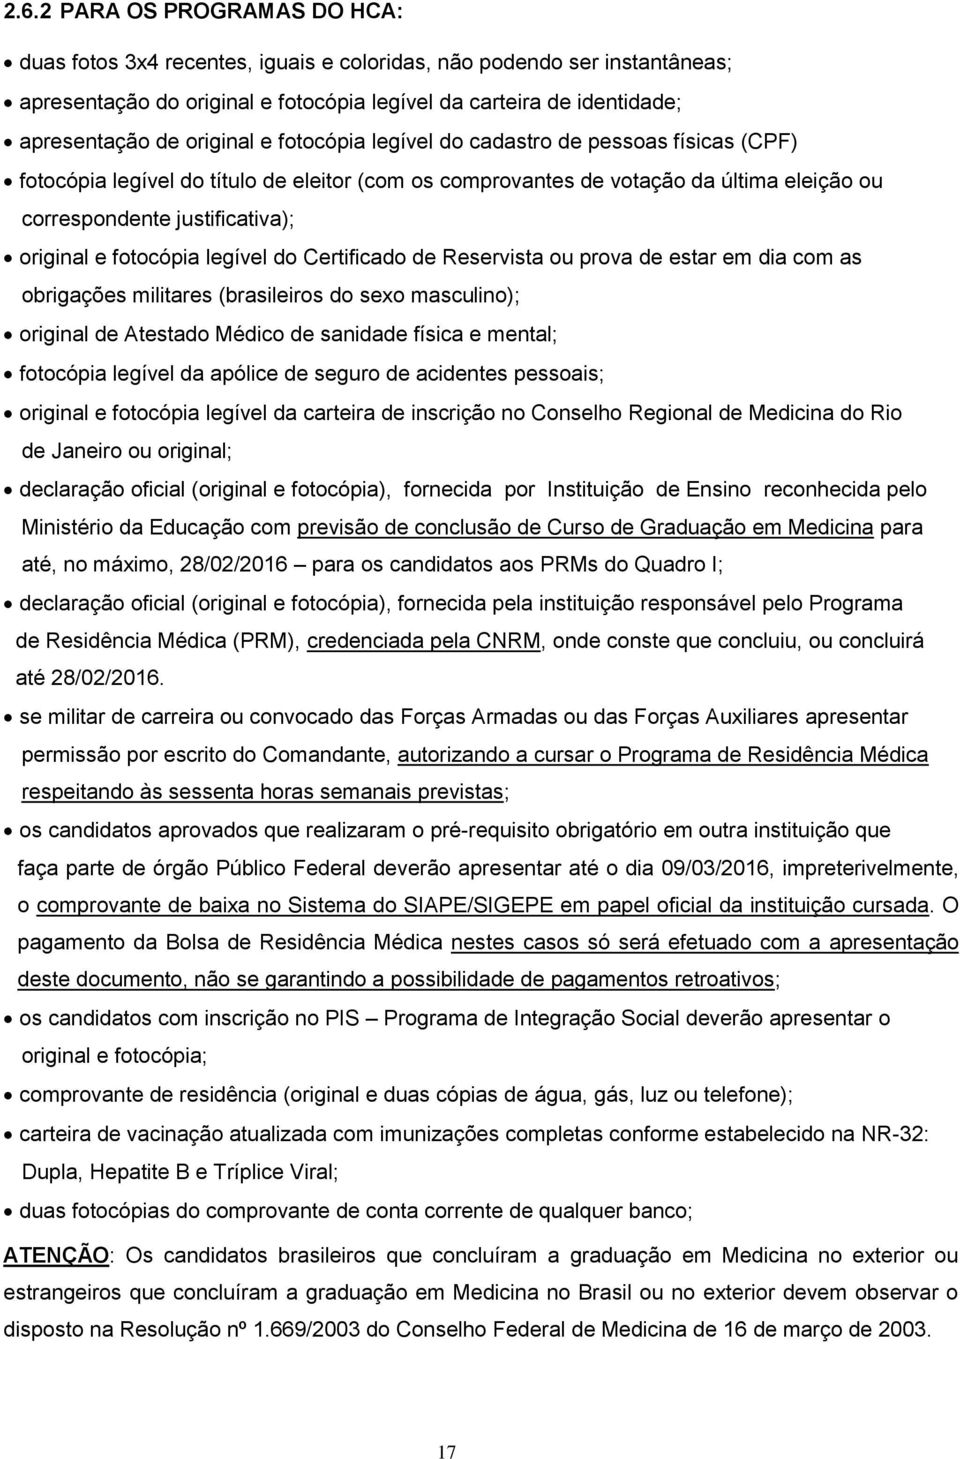 fotocópia legível do Certificado de Reservista ou prova de estar em dia com as obrigações militares (brasileiros do sexo masculino); original de Atestado Médico de sanidade física e mental; fotocópia